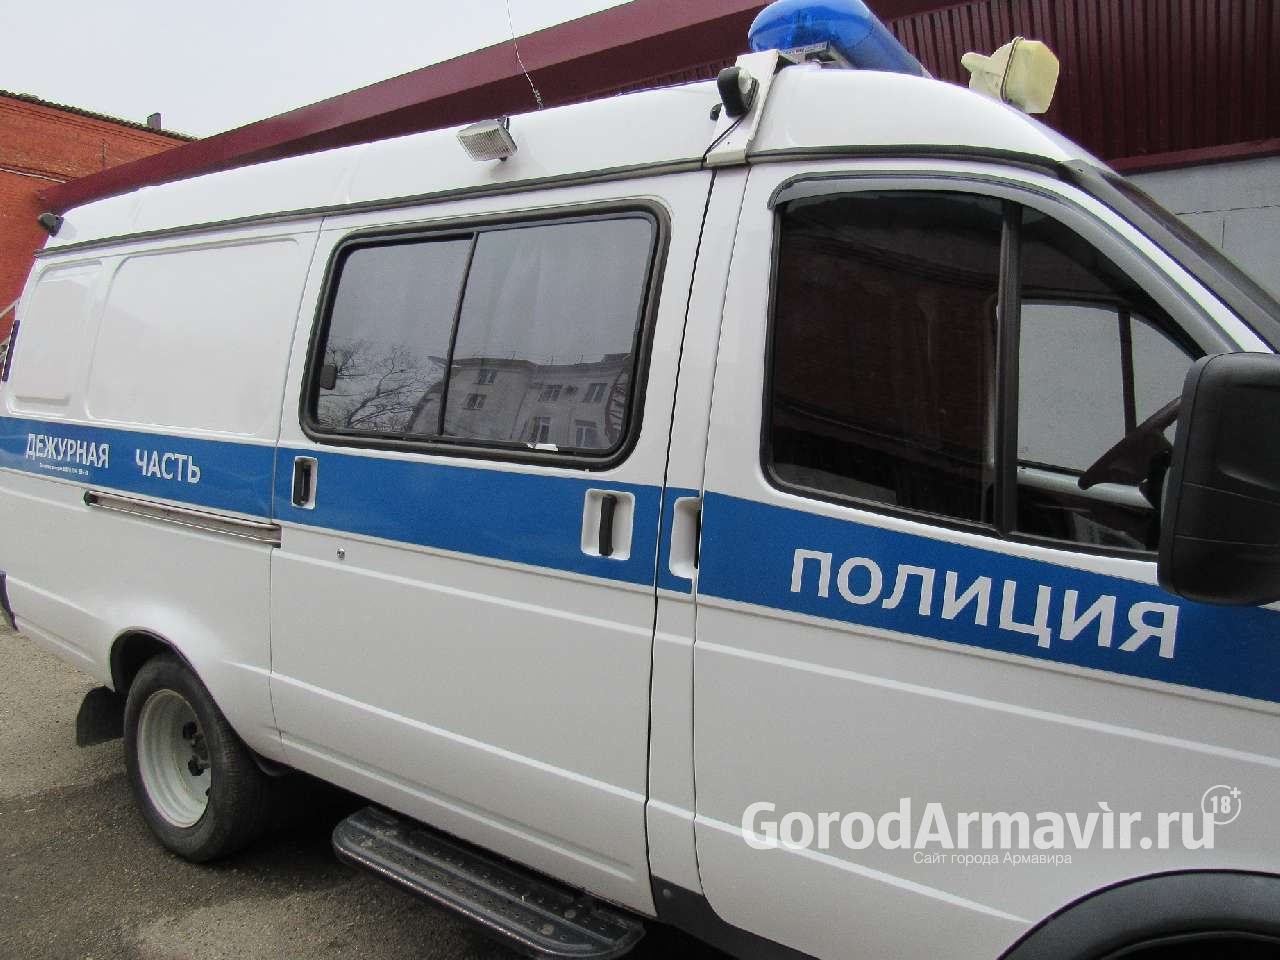 Житель Армавира украл из дома в соседнем районе техники на 120 тыс руб 